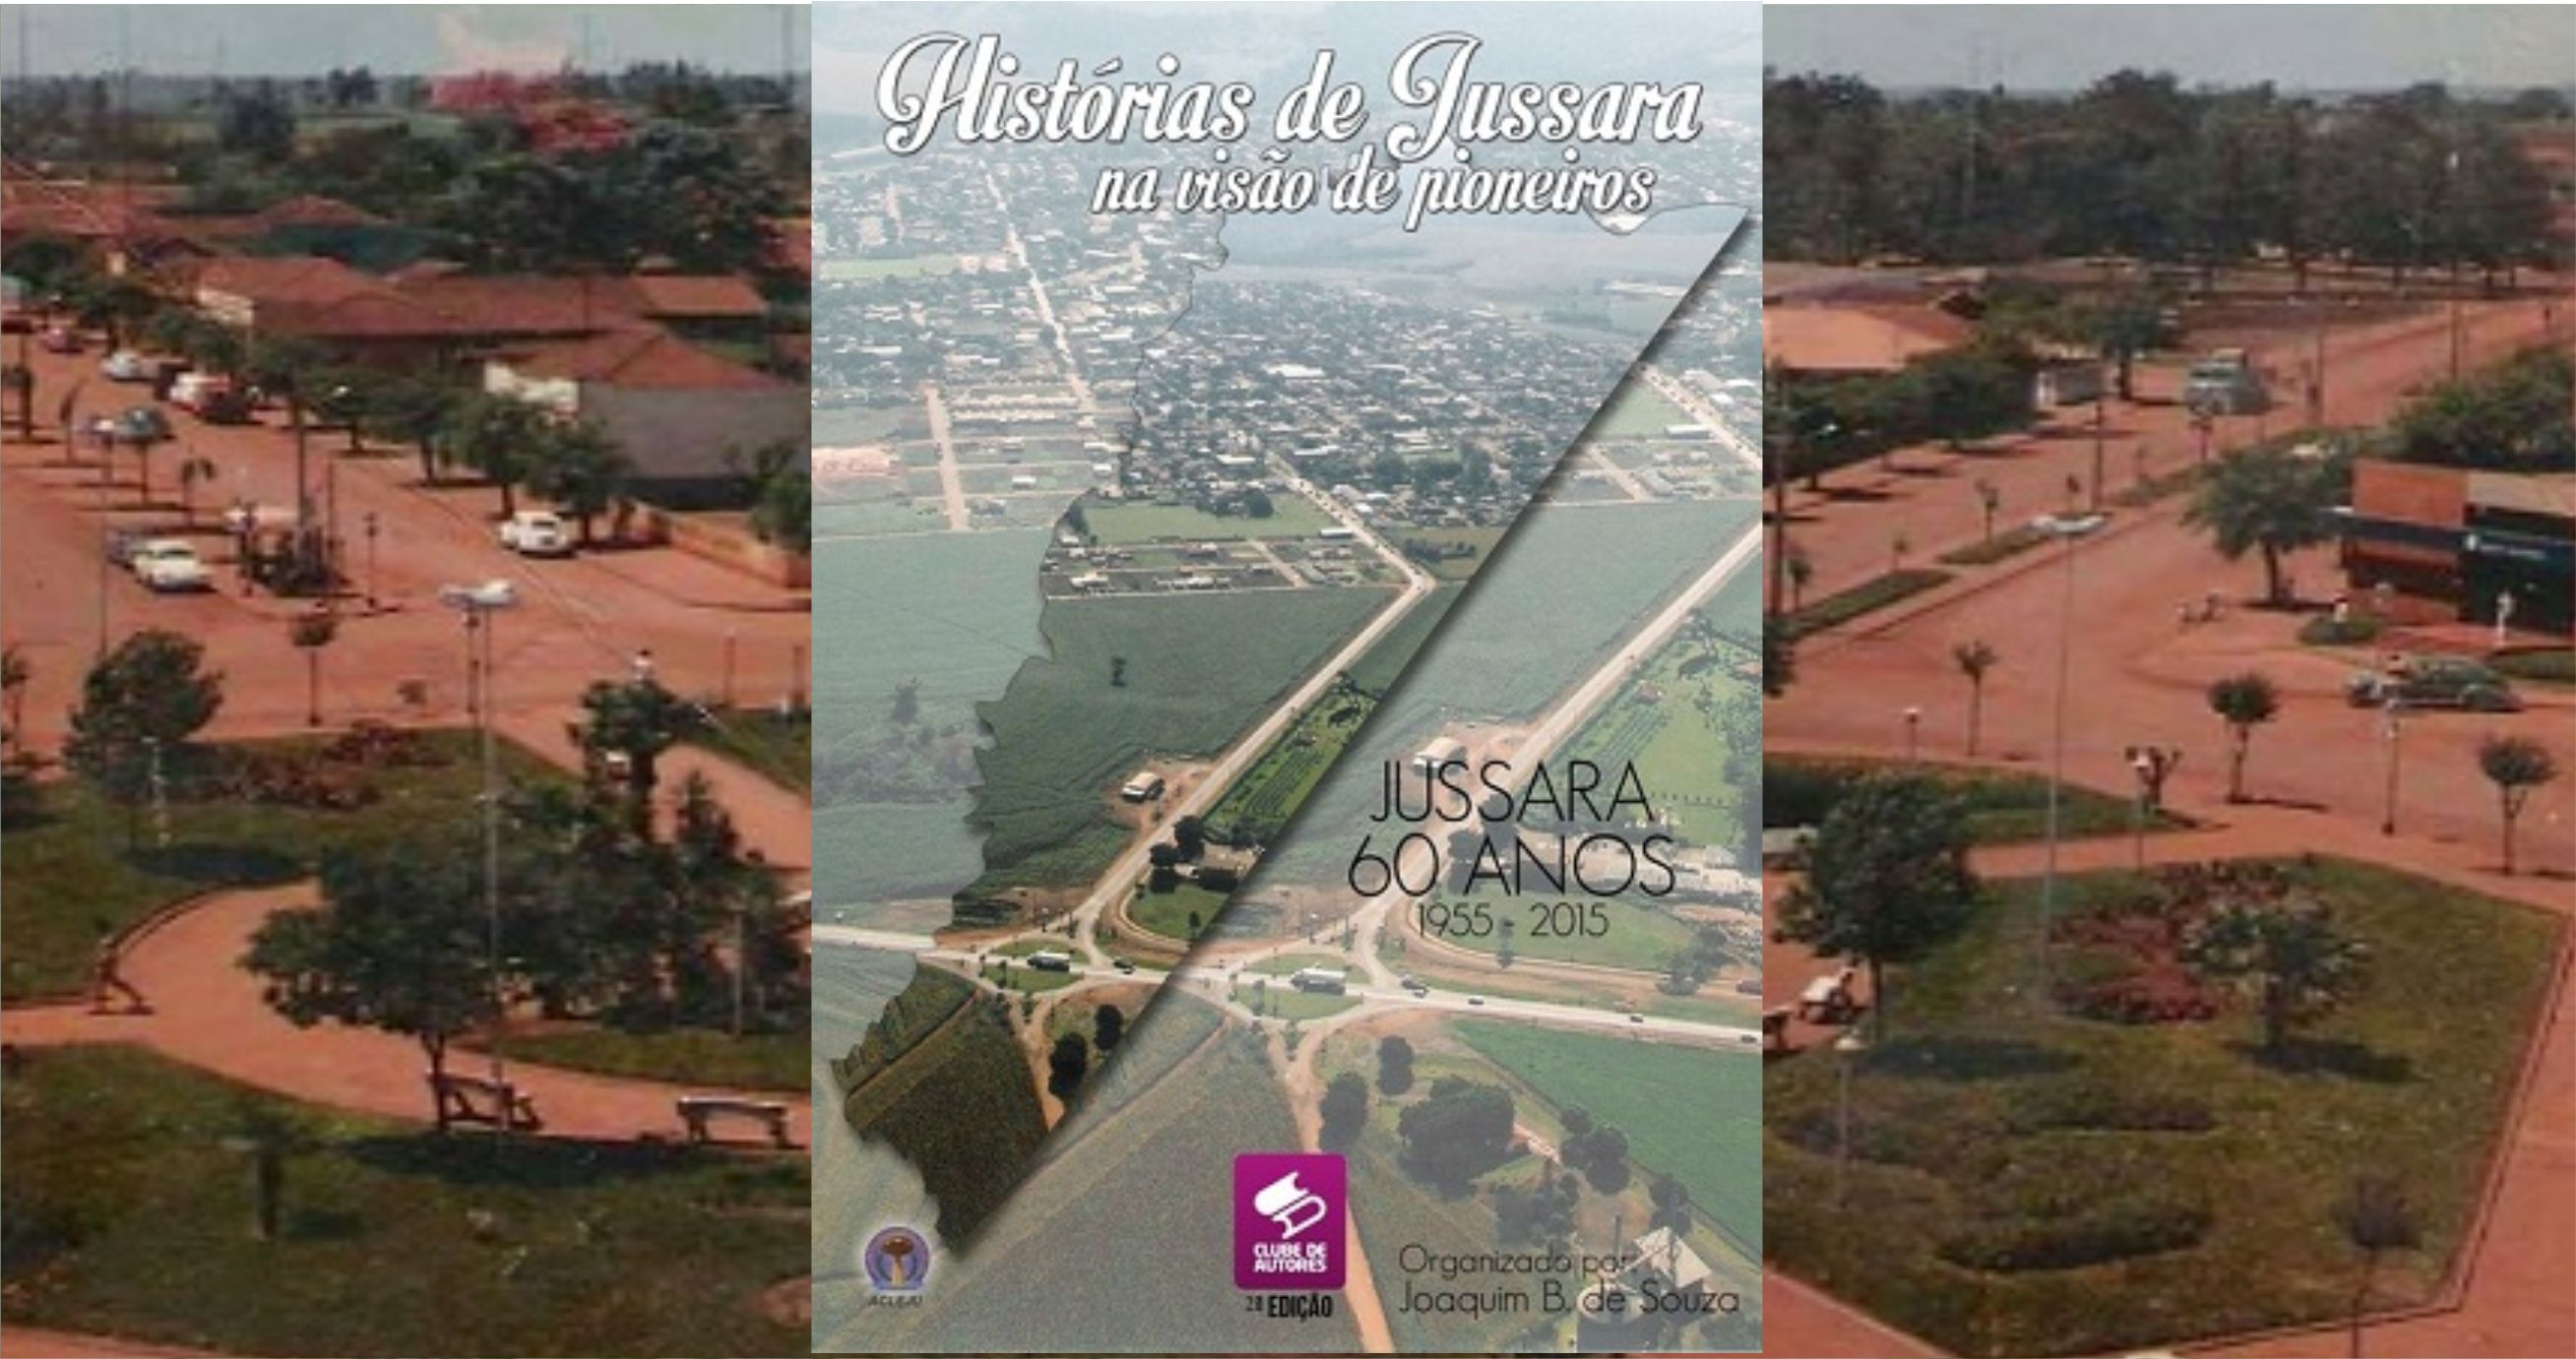 Livro Histórias de Jussara na visão de pioneiros | Academia de Letras de Jussara PR - ACLEJU | Clube de Autores